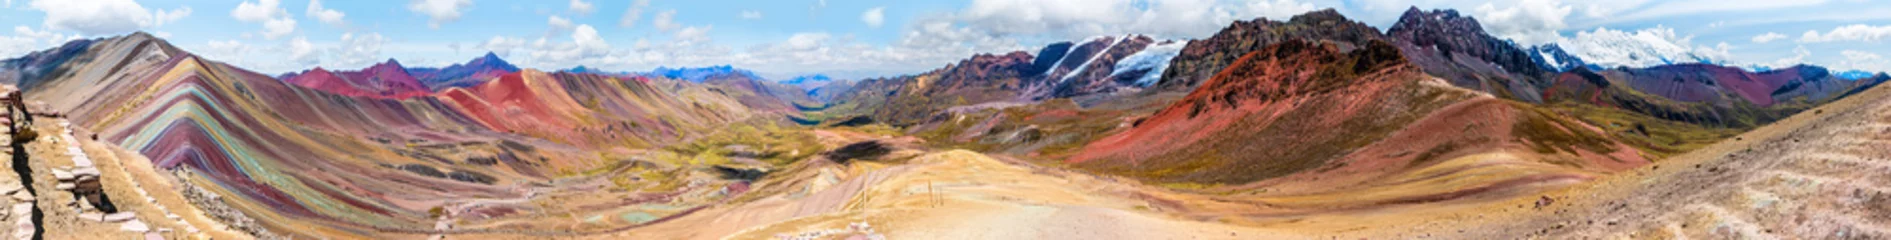 Photo sur Aluminium Vinicunca Vinicunca ou Winikunka. Aussi appelé Montna a de Siete Colores. Montagne dans les Andes du Pérou